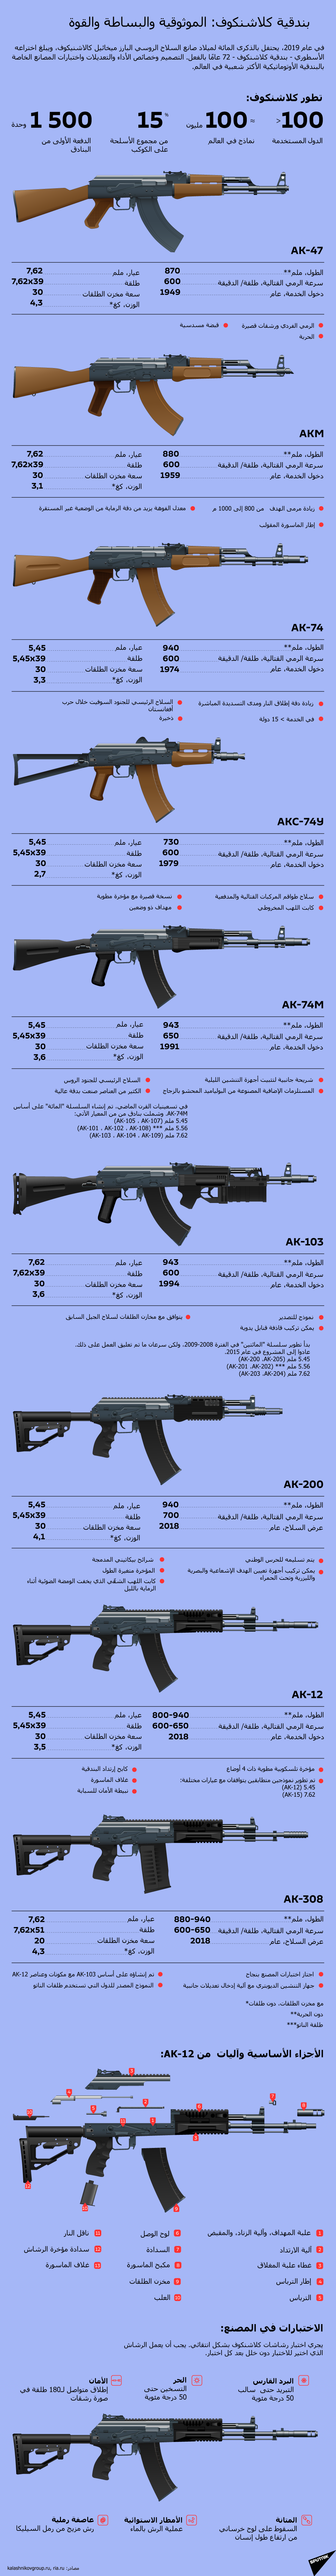 بندقية كلاشنكوف: الموثوقية والبساطة والقوة - سبوتنيك عربي